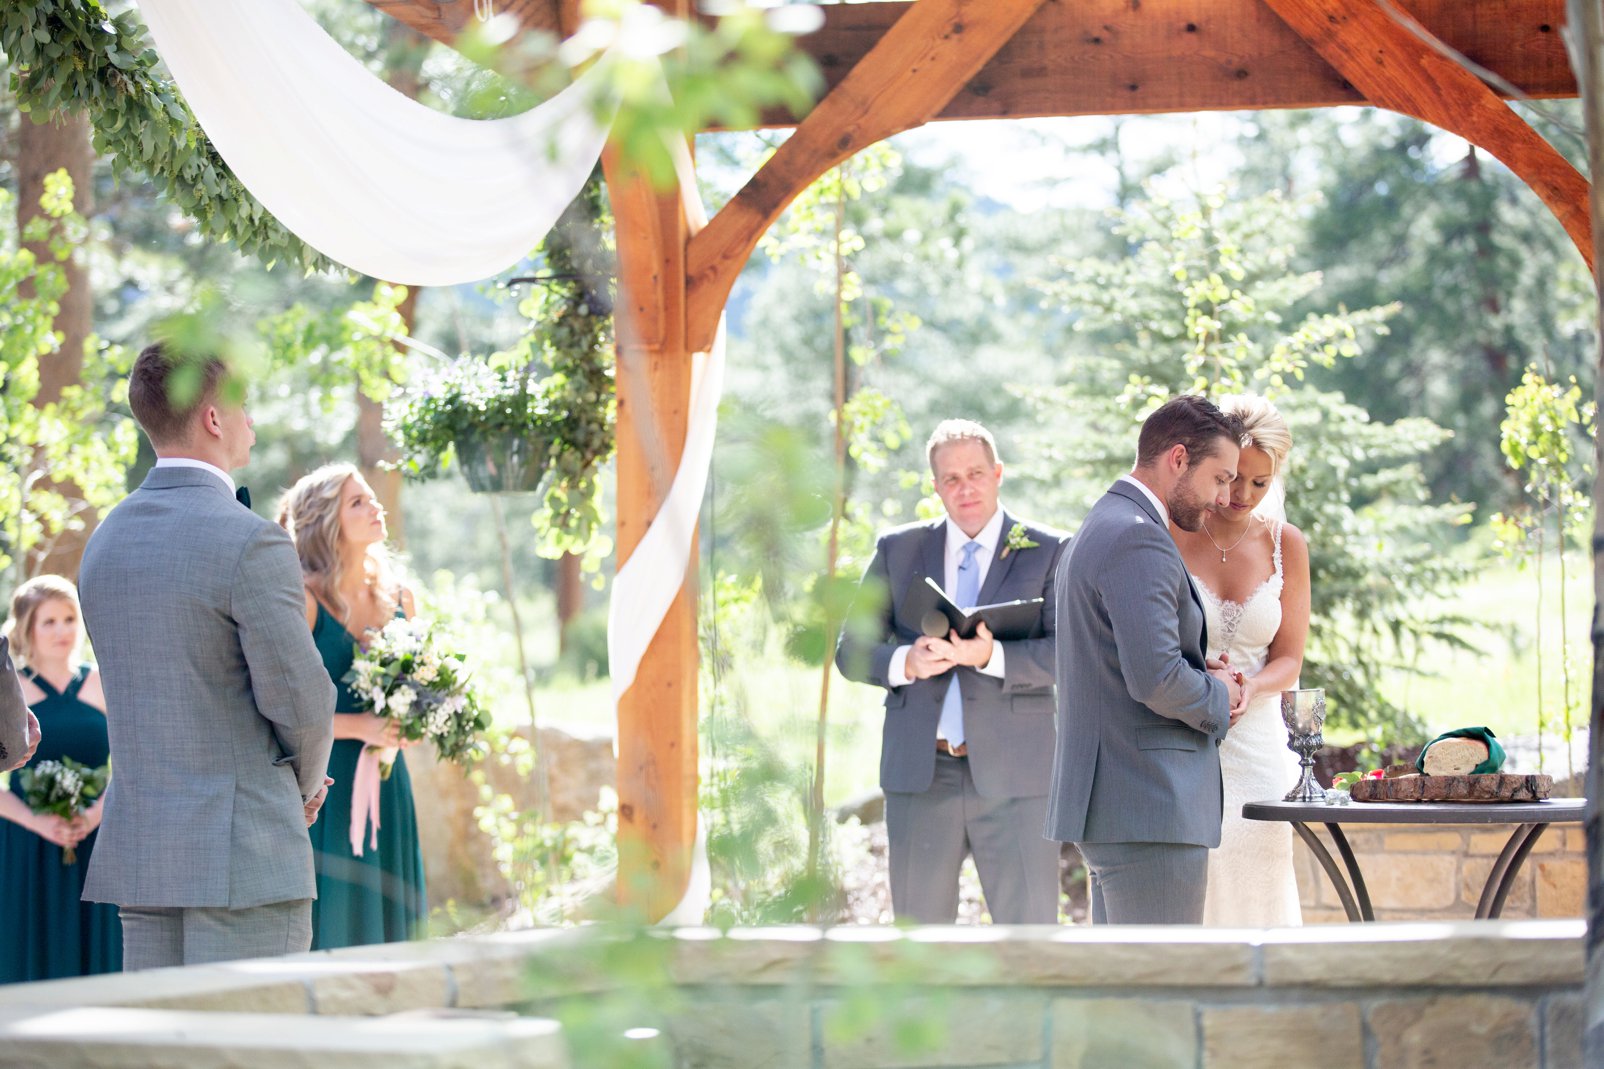 ceremony during wedding at della terra